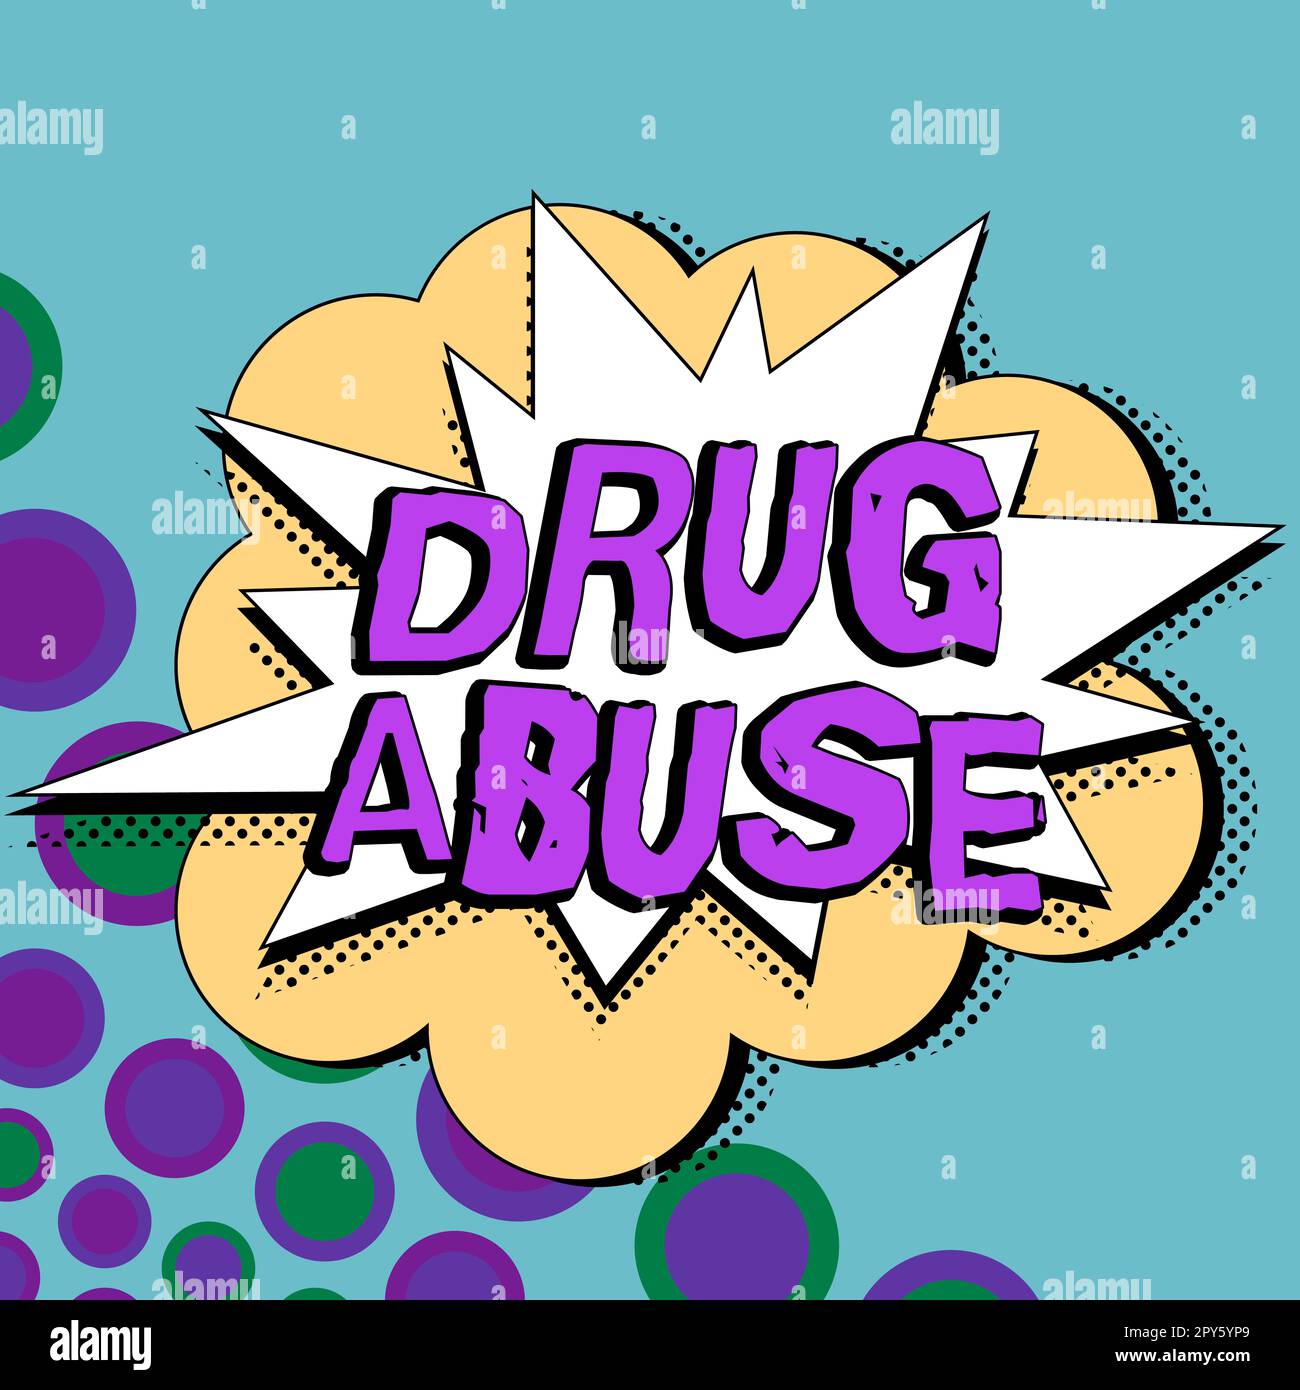 Affiche textuelle indiquant l'abus de drogues. Concept d'affaires drogue compulsive cherchant la prise habituelle de drogues illégales Banque D'Images